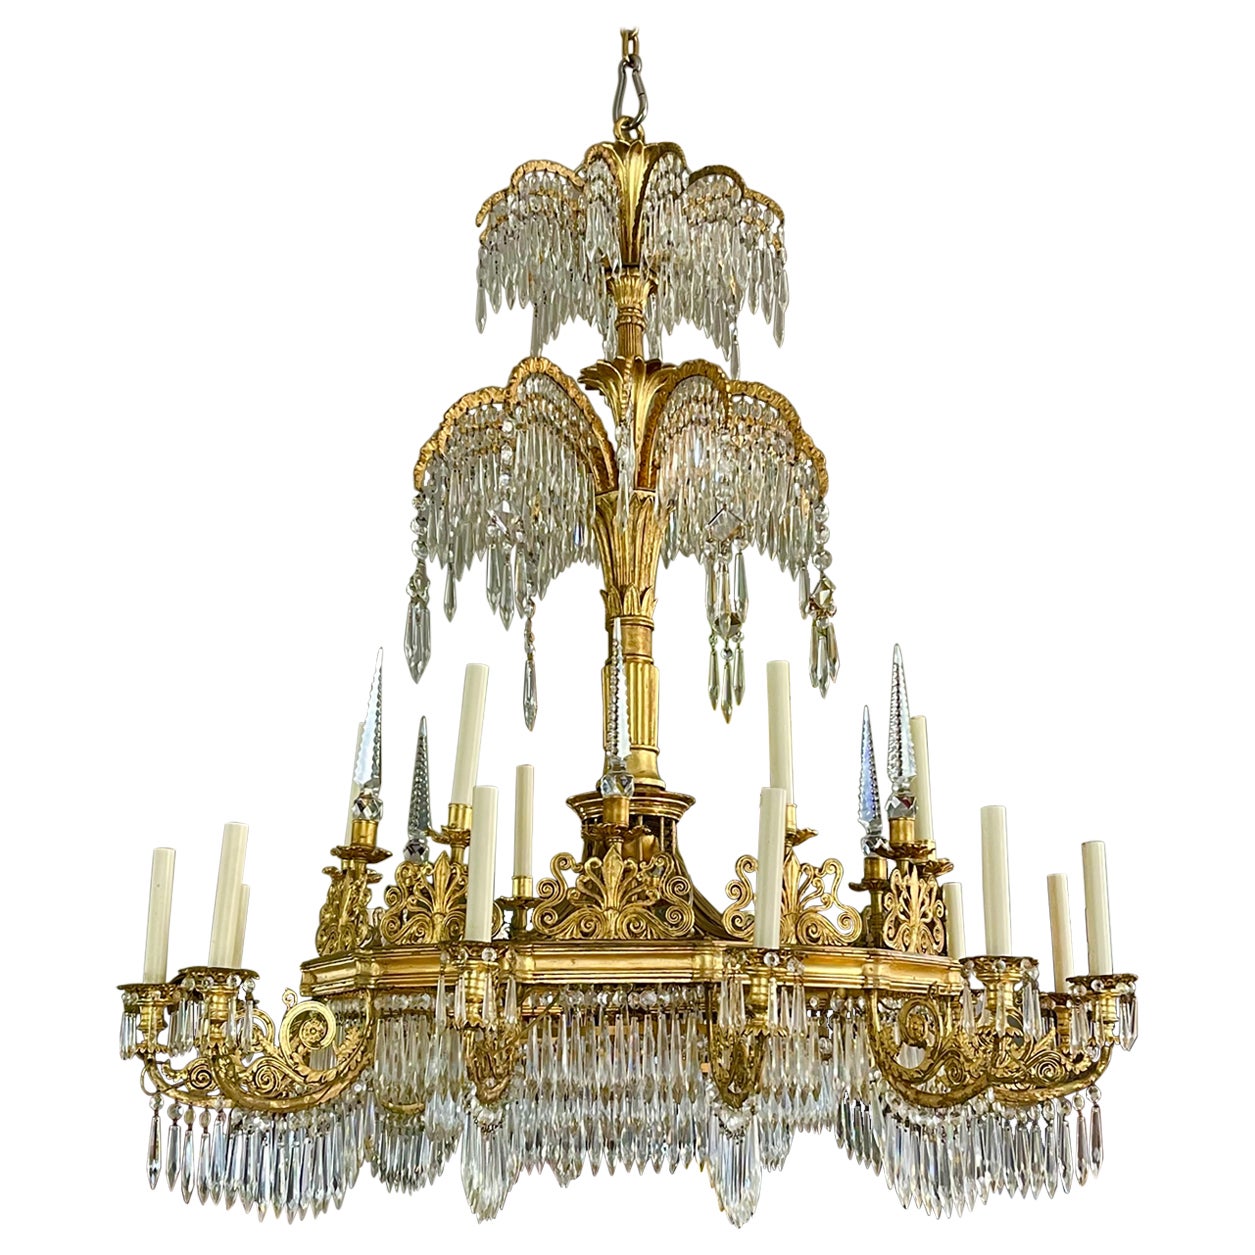 Monumental lustre néoclassique à 18 bras de lumière, vers 1825, Design/One